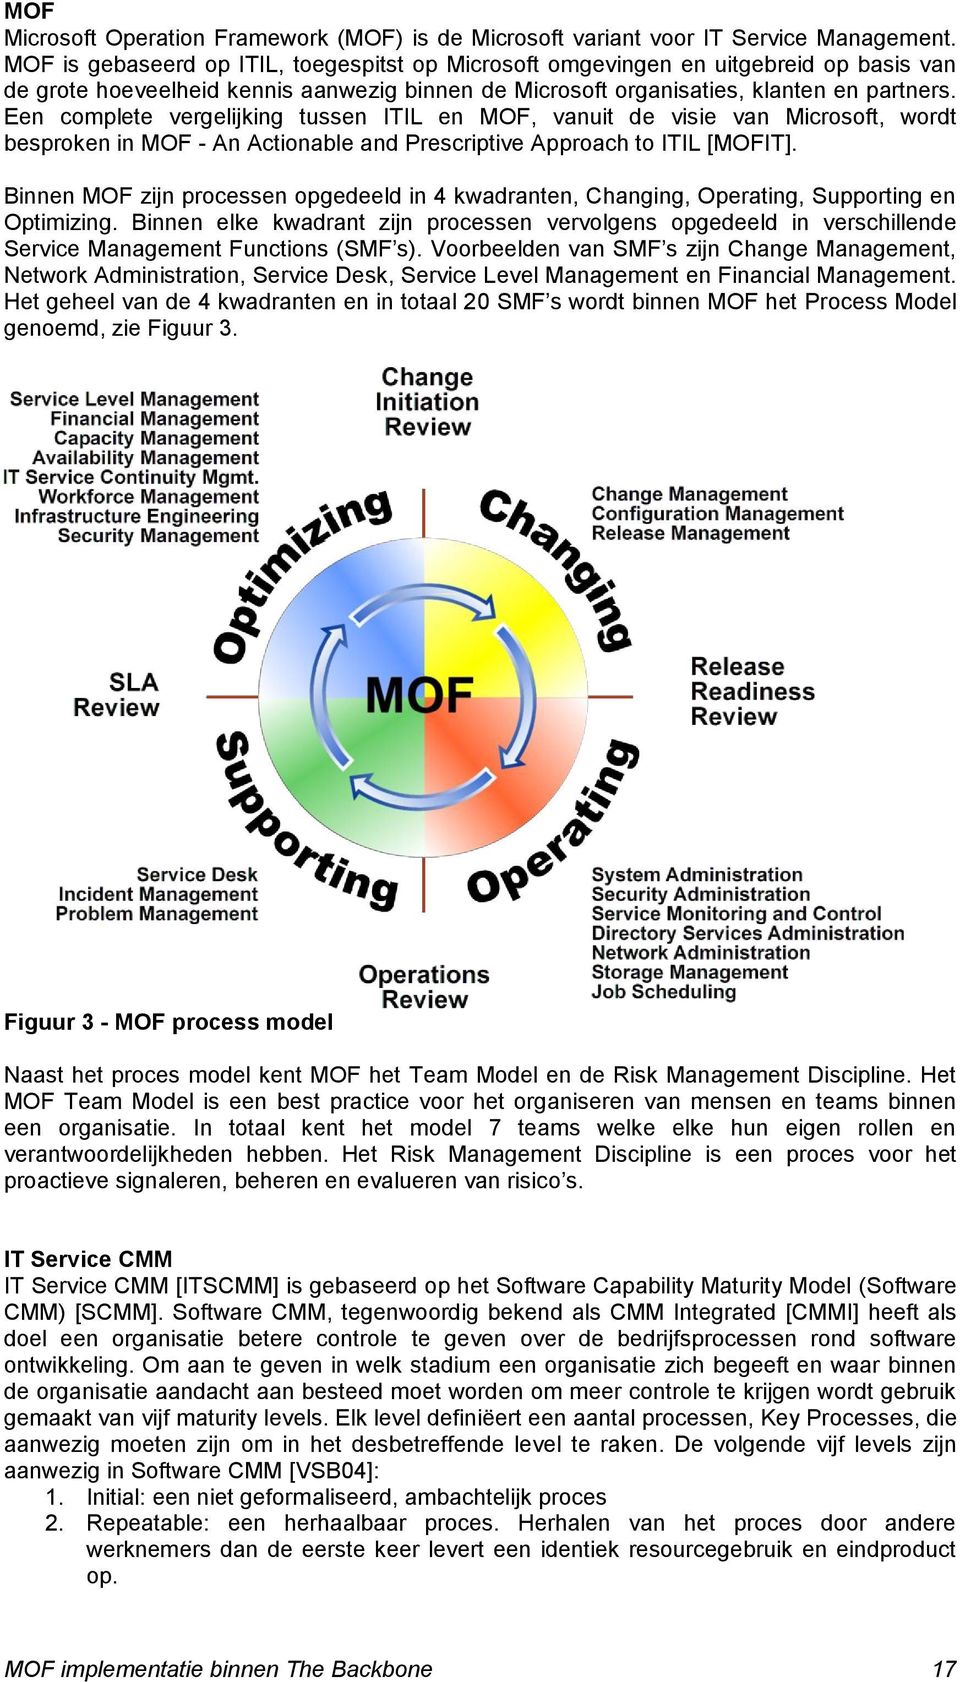 Een complete vergelijking tussen ITIL en MOF, vanuit de visie van Microsoft, wordt besproken in MOF - An Actionable and Prescriptive Approach to ITIL [MOFIT].